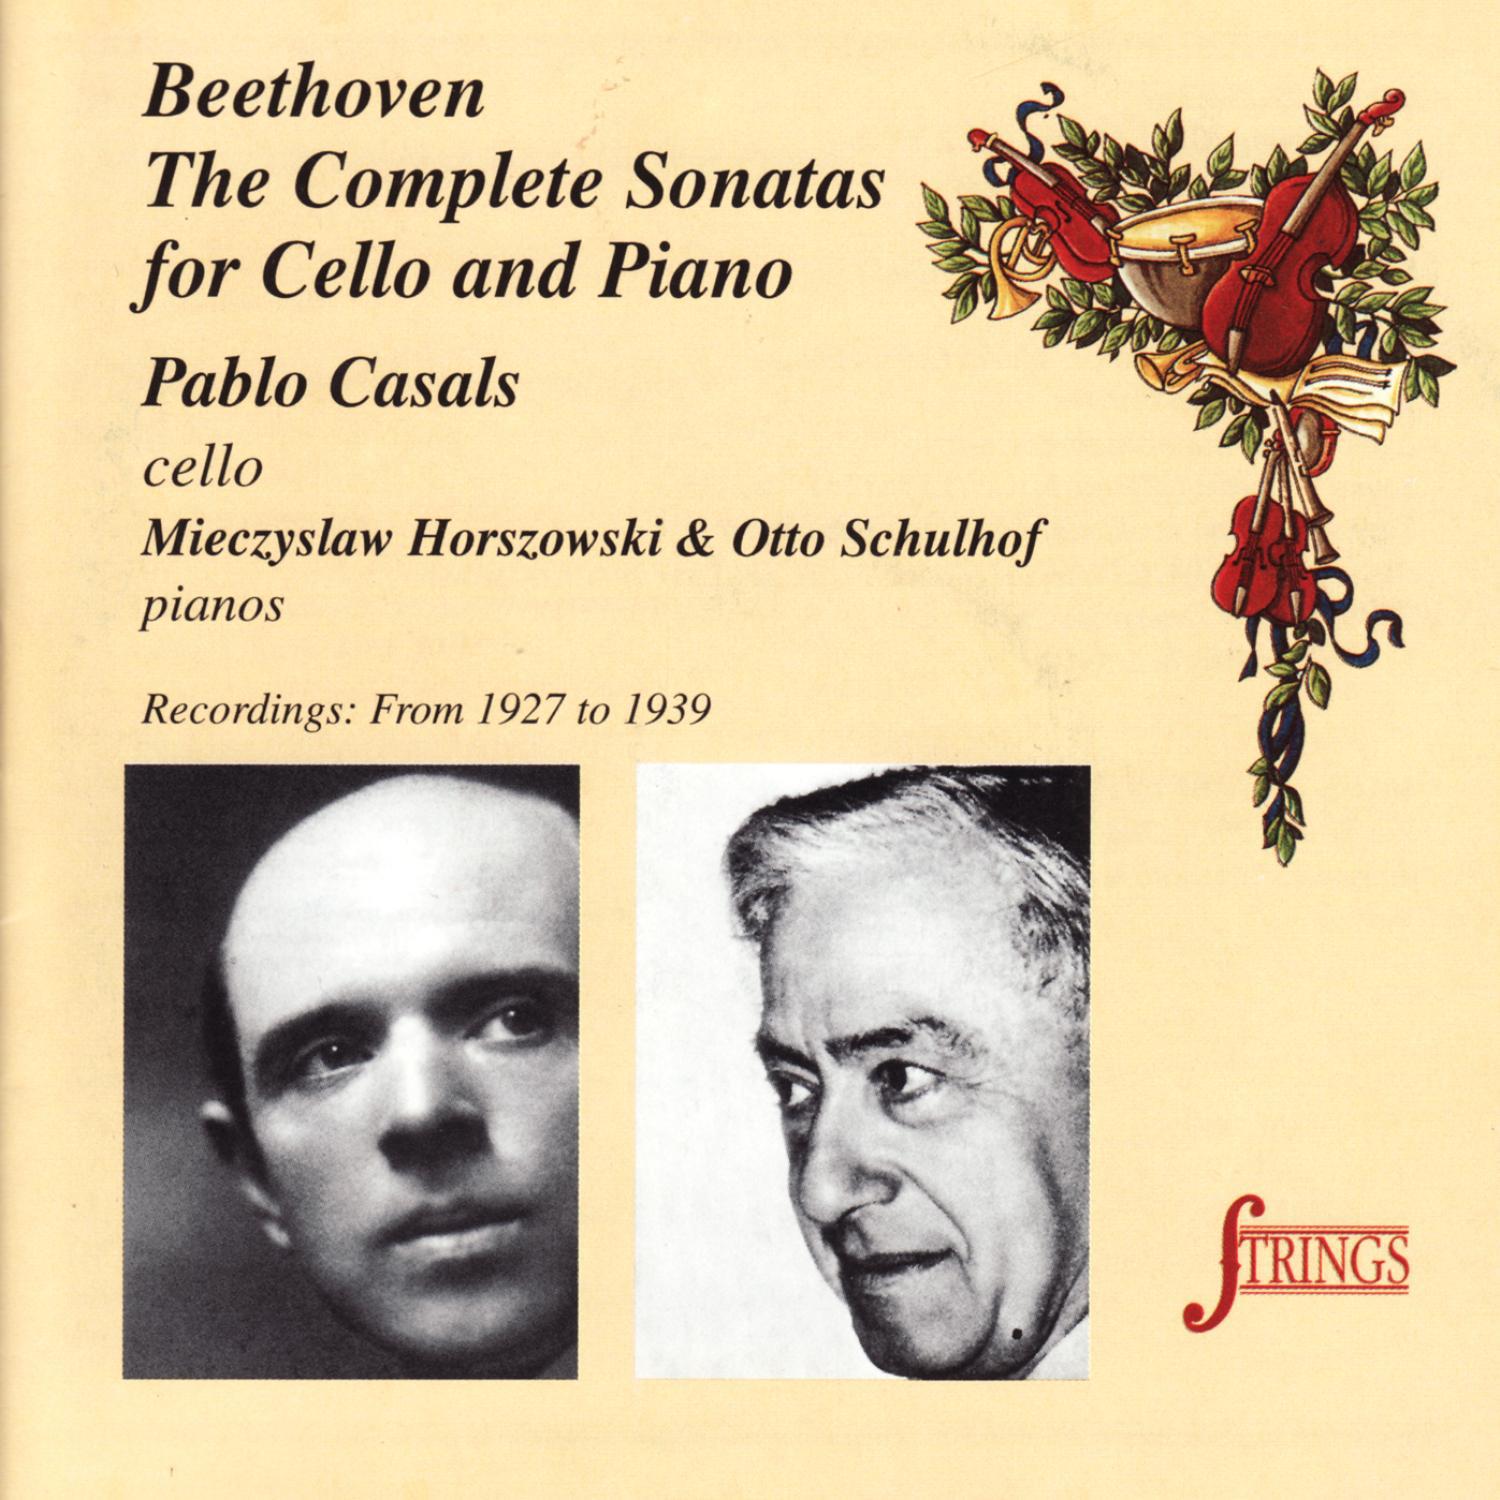 Sonata No. 3 for Cello and Piano in A Major, Op. 69: II. Scherzo. Allegro molto